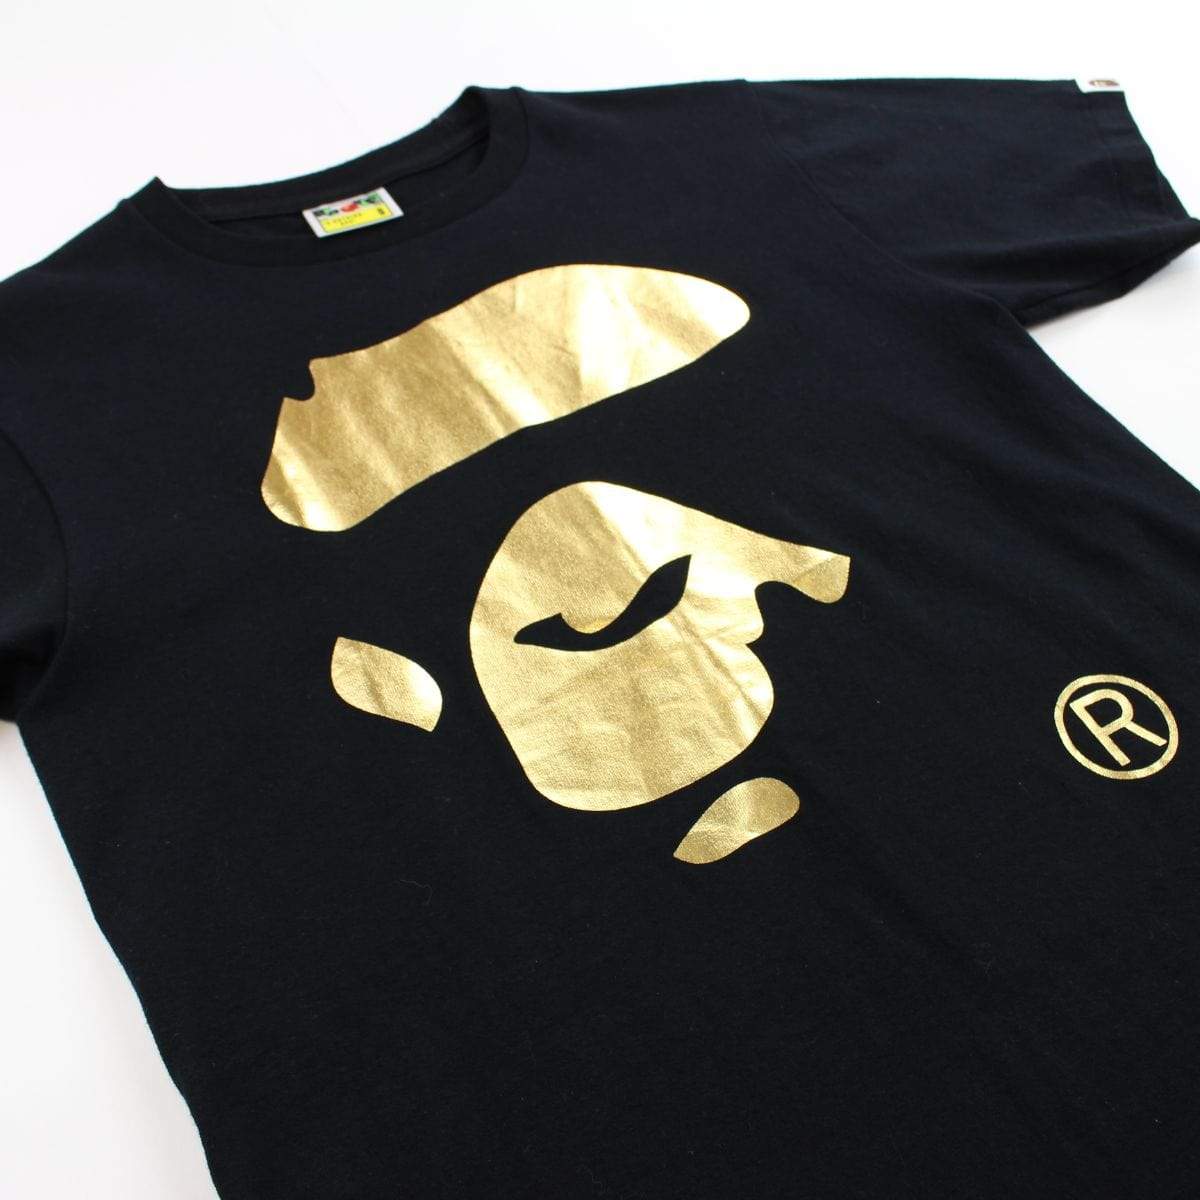 Bape Gold Foil Ape Face Logo Tee Black - SaruGeneral